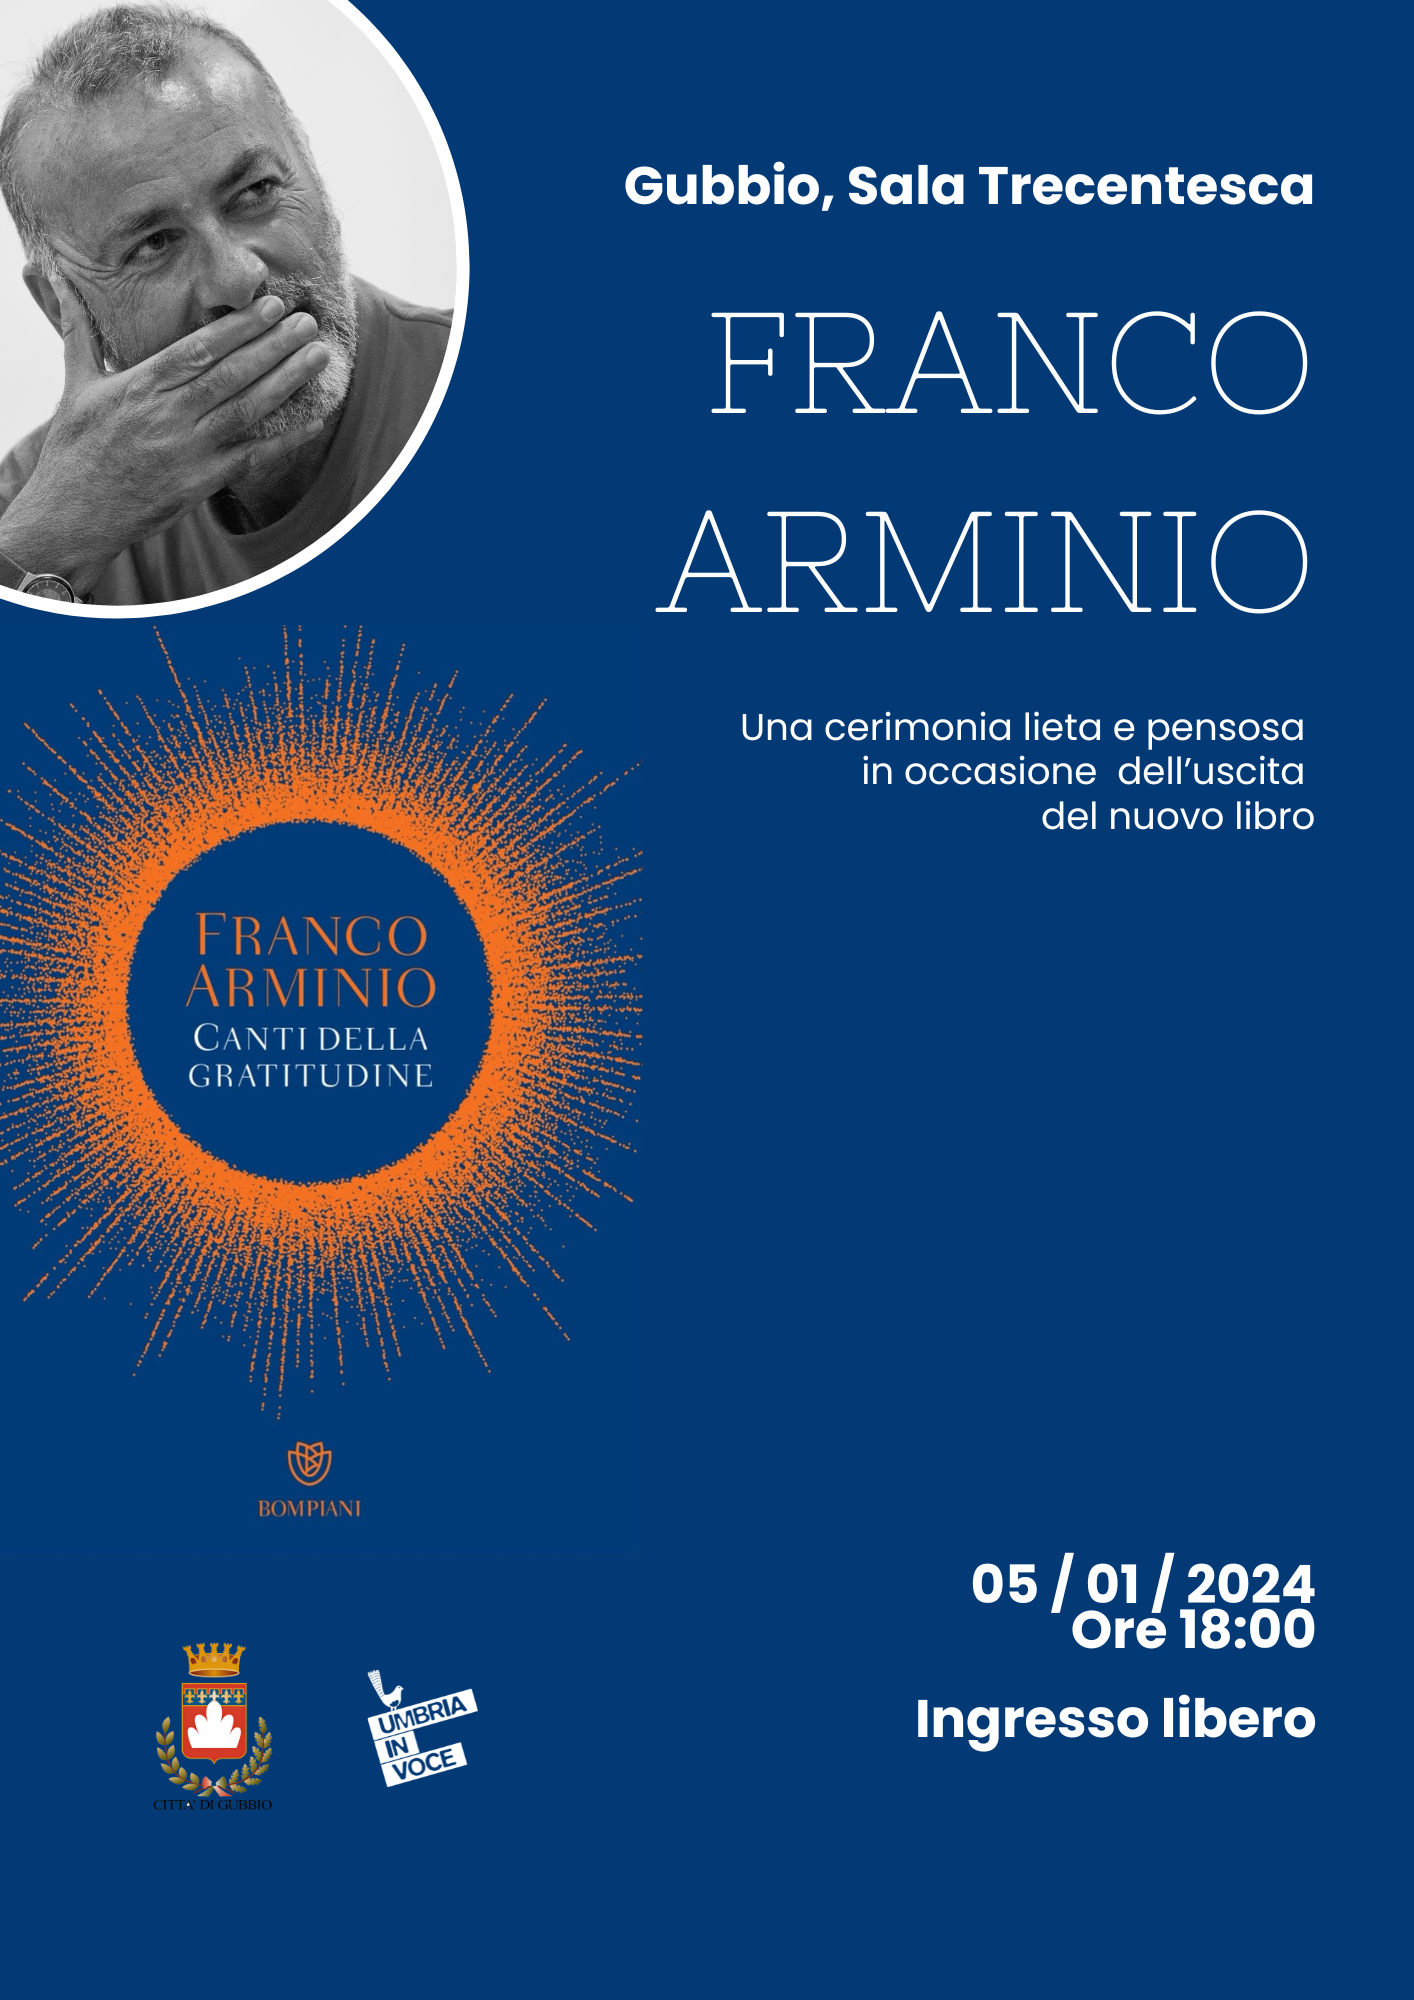 Franco Arminio a Gubbio con i suoi canti della gratitudine